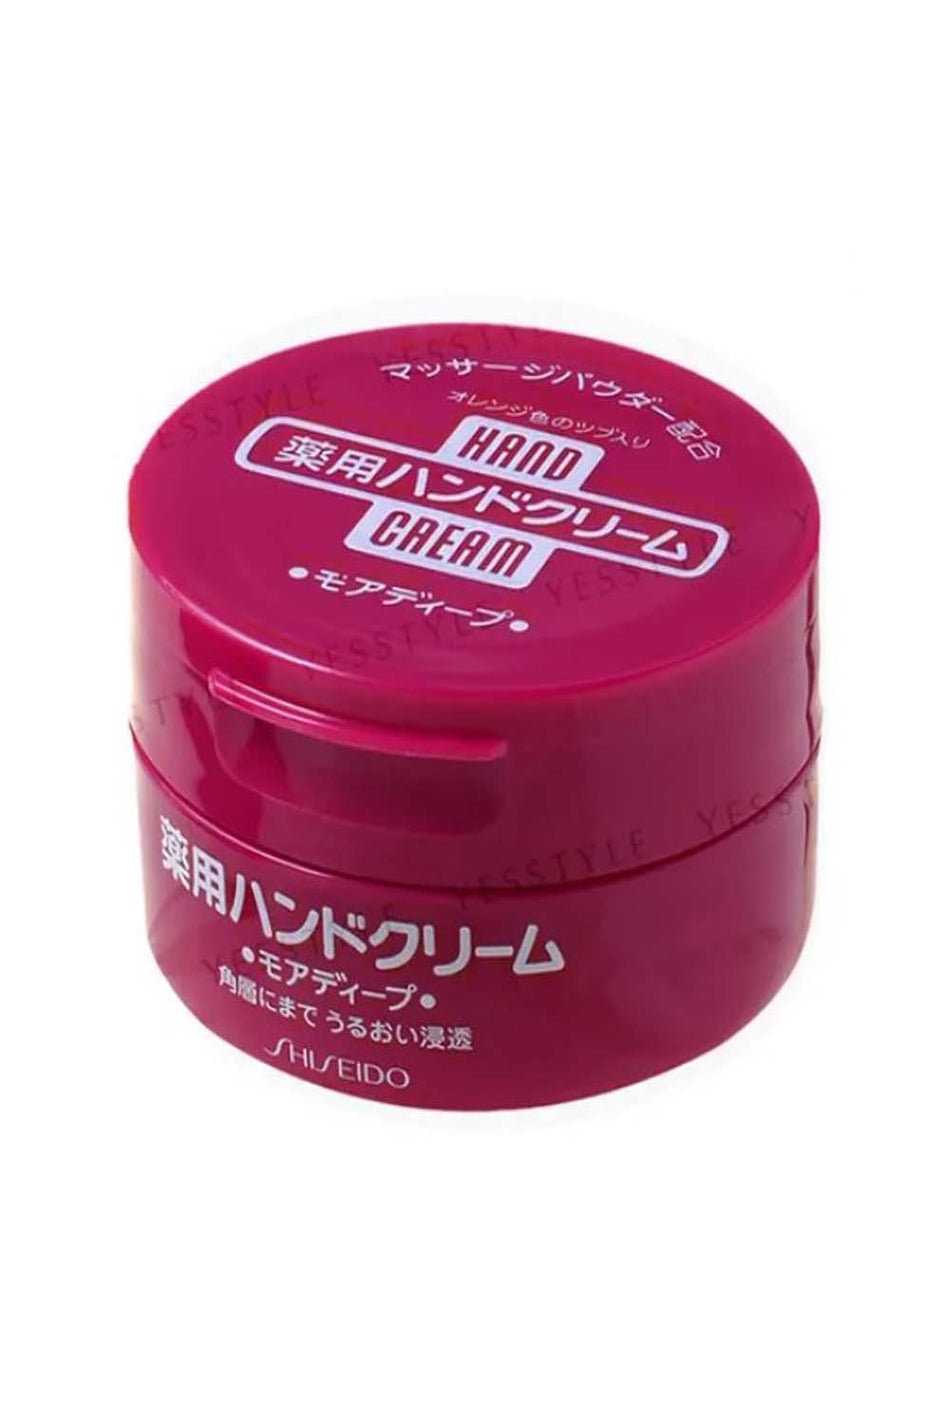 Shiseido Hand Cream